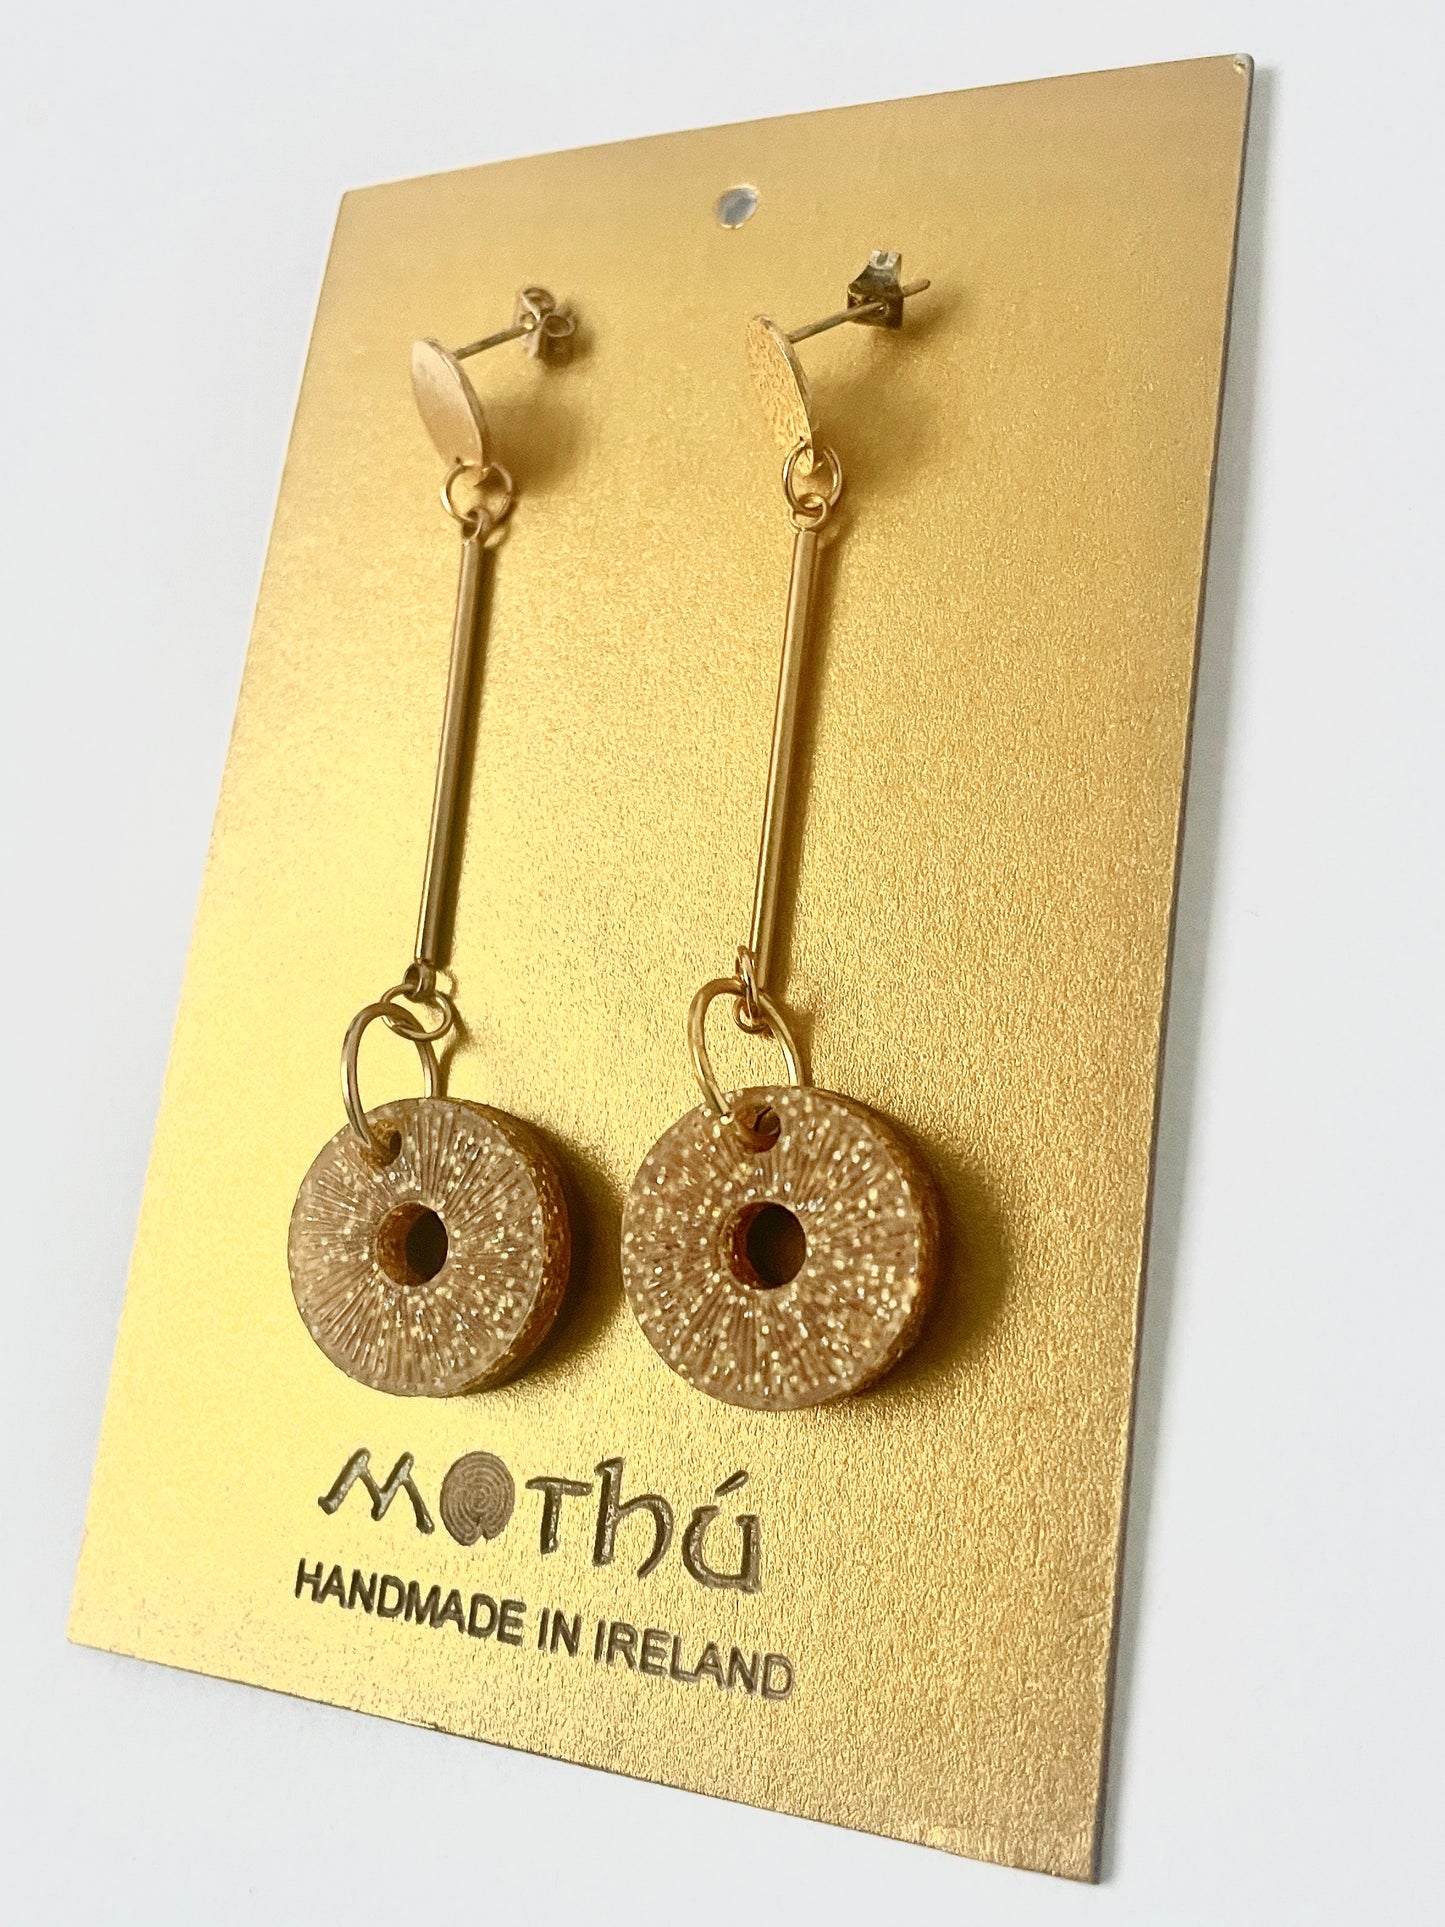 Glitter Gold Drop Hoop Earring, Gold Plated Brass, Length 7cm x 2cm x 0.6cm